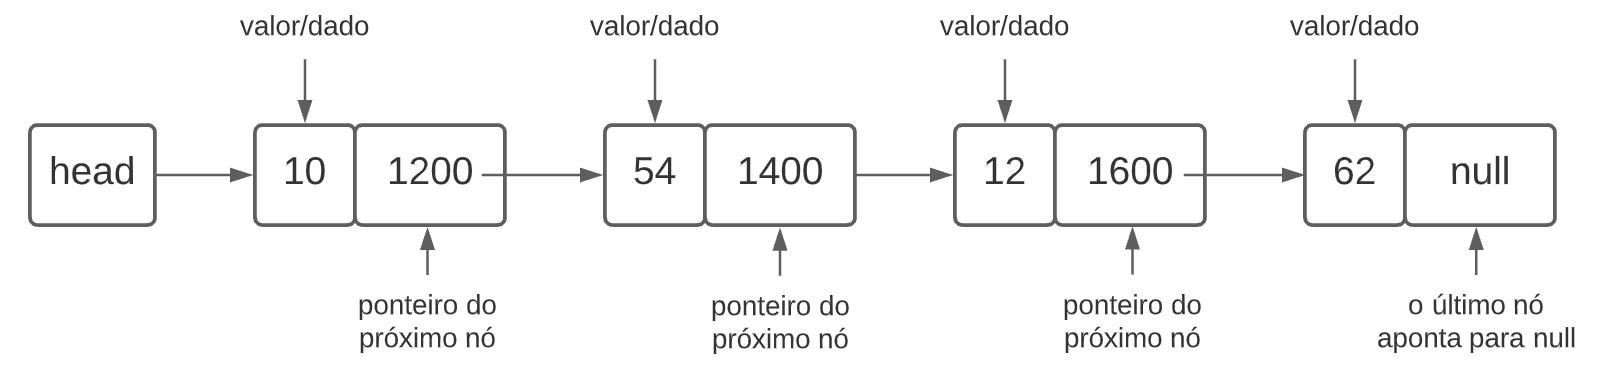 Diagrama do fluxo de uma lista ligada. Os elementos estão divididos em nove retângulos, com diferentes valores de valor/dado e ponteiro do próximo nó. Cada nó está ligado ao pado no retângulo seguinte por uma seta, representando os processos interligados entre o ponteiro da memória e o próximo elemento.